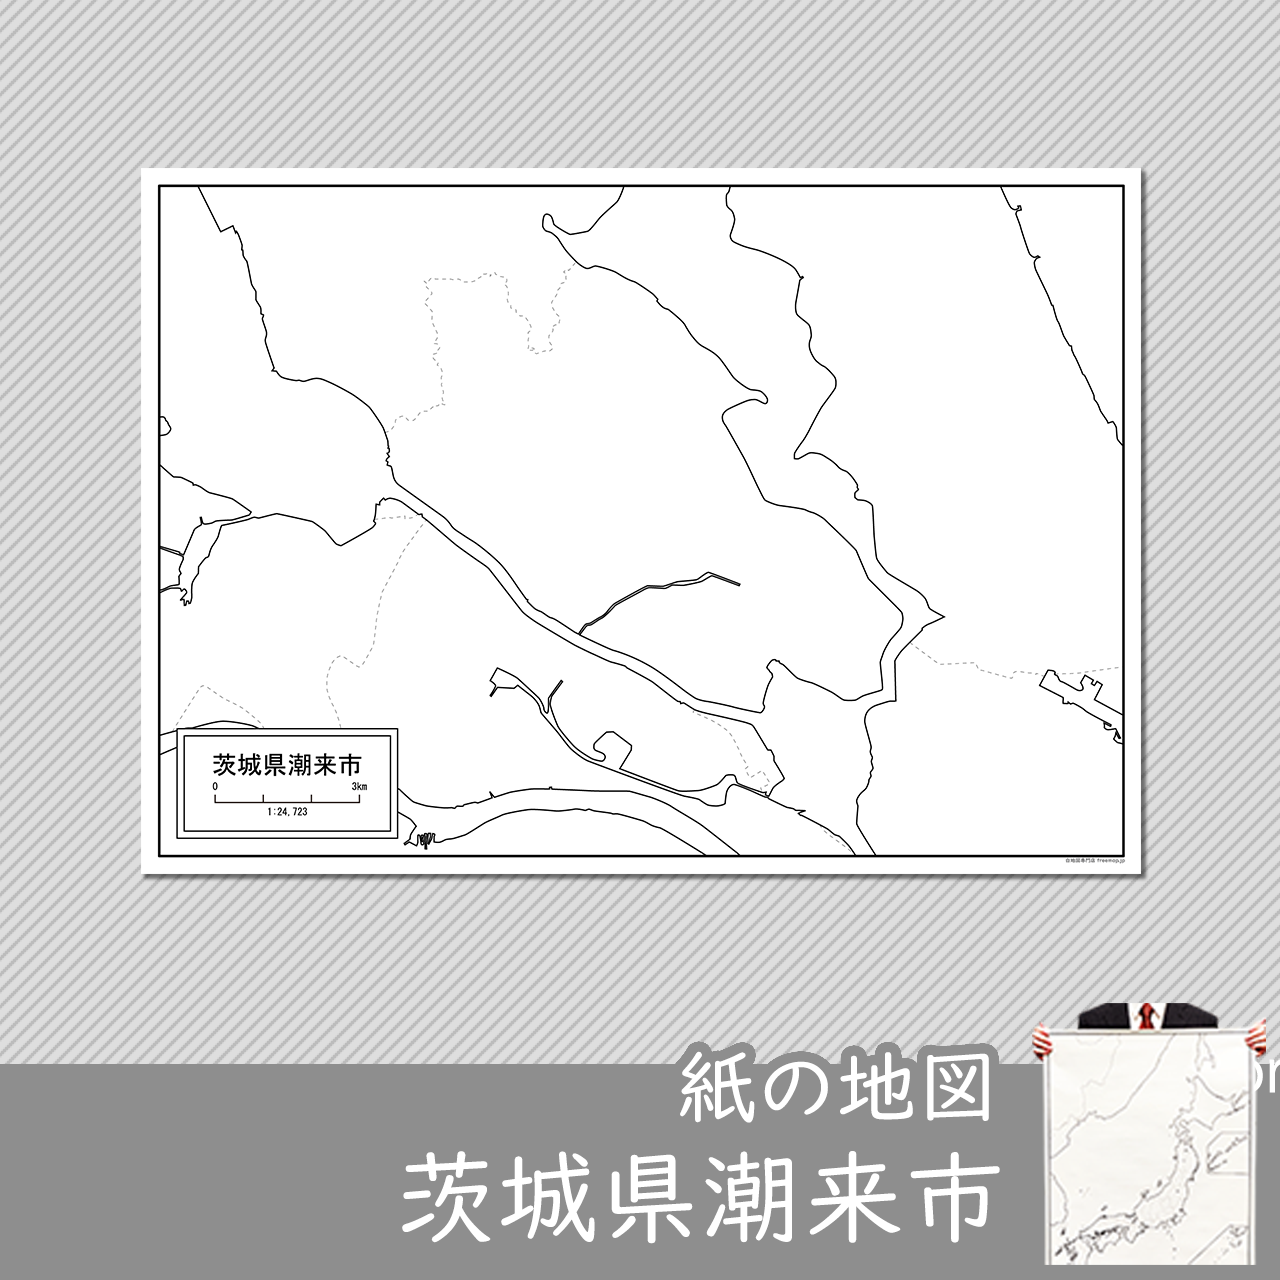 潮来市の紙の白地図のサムネイル